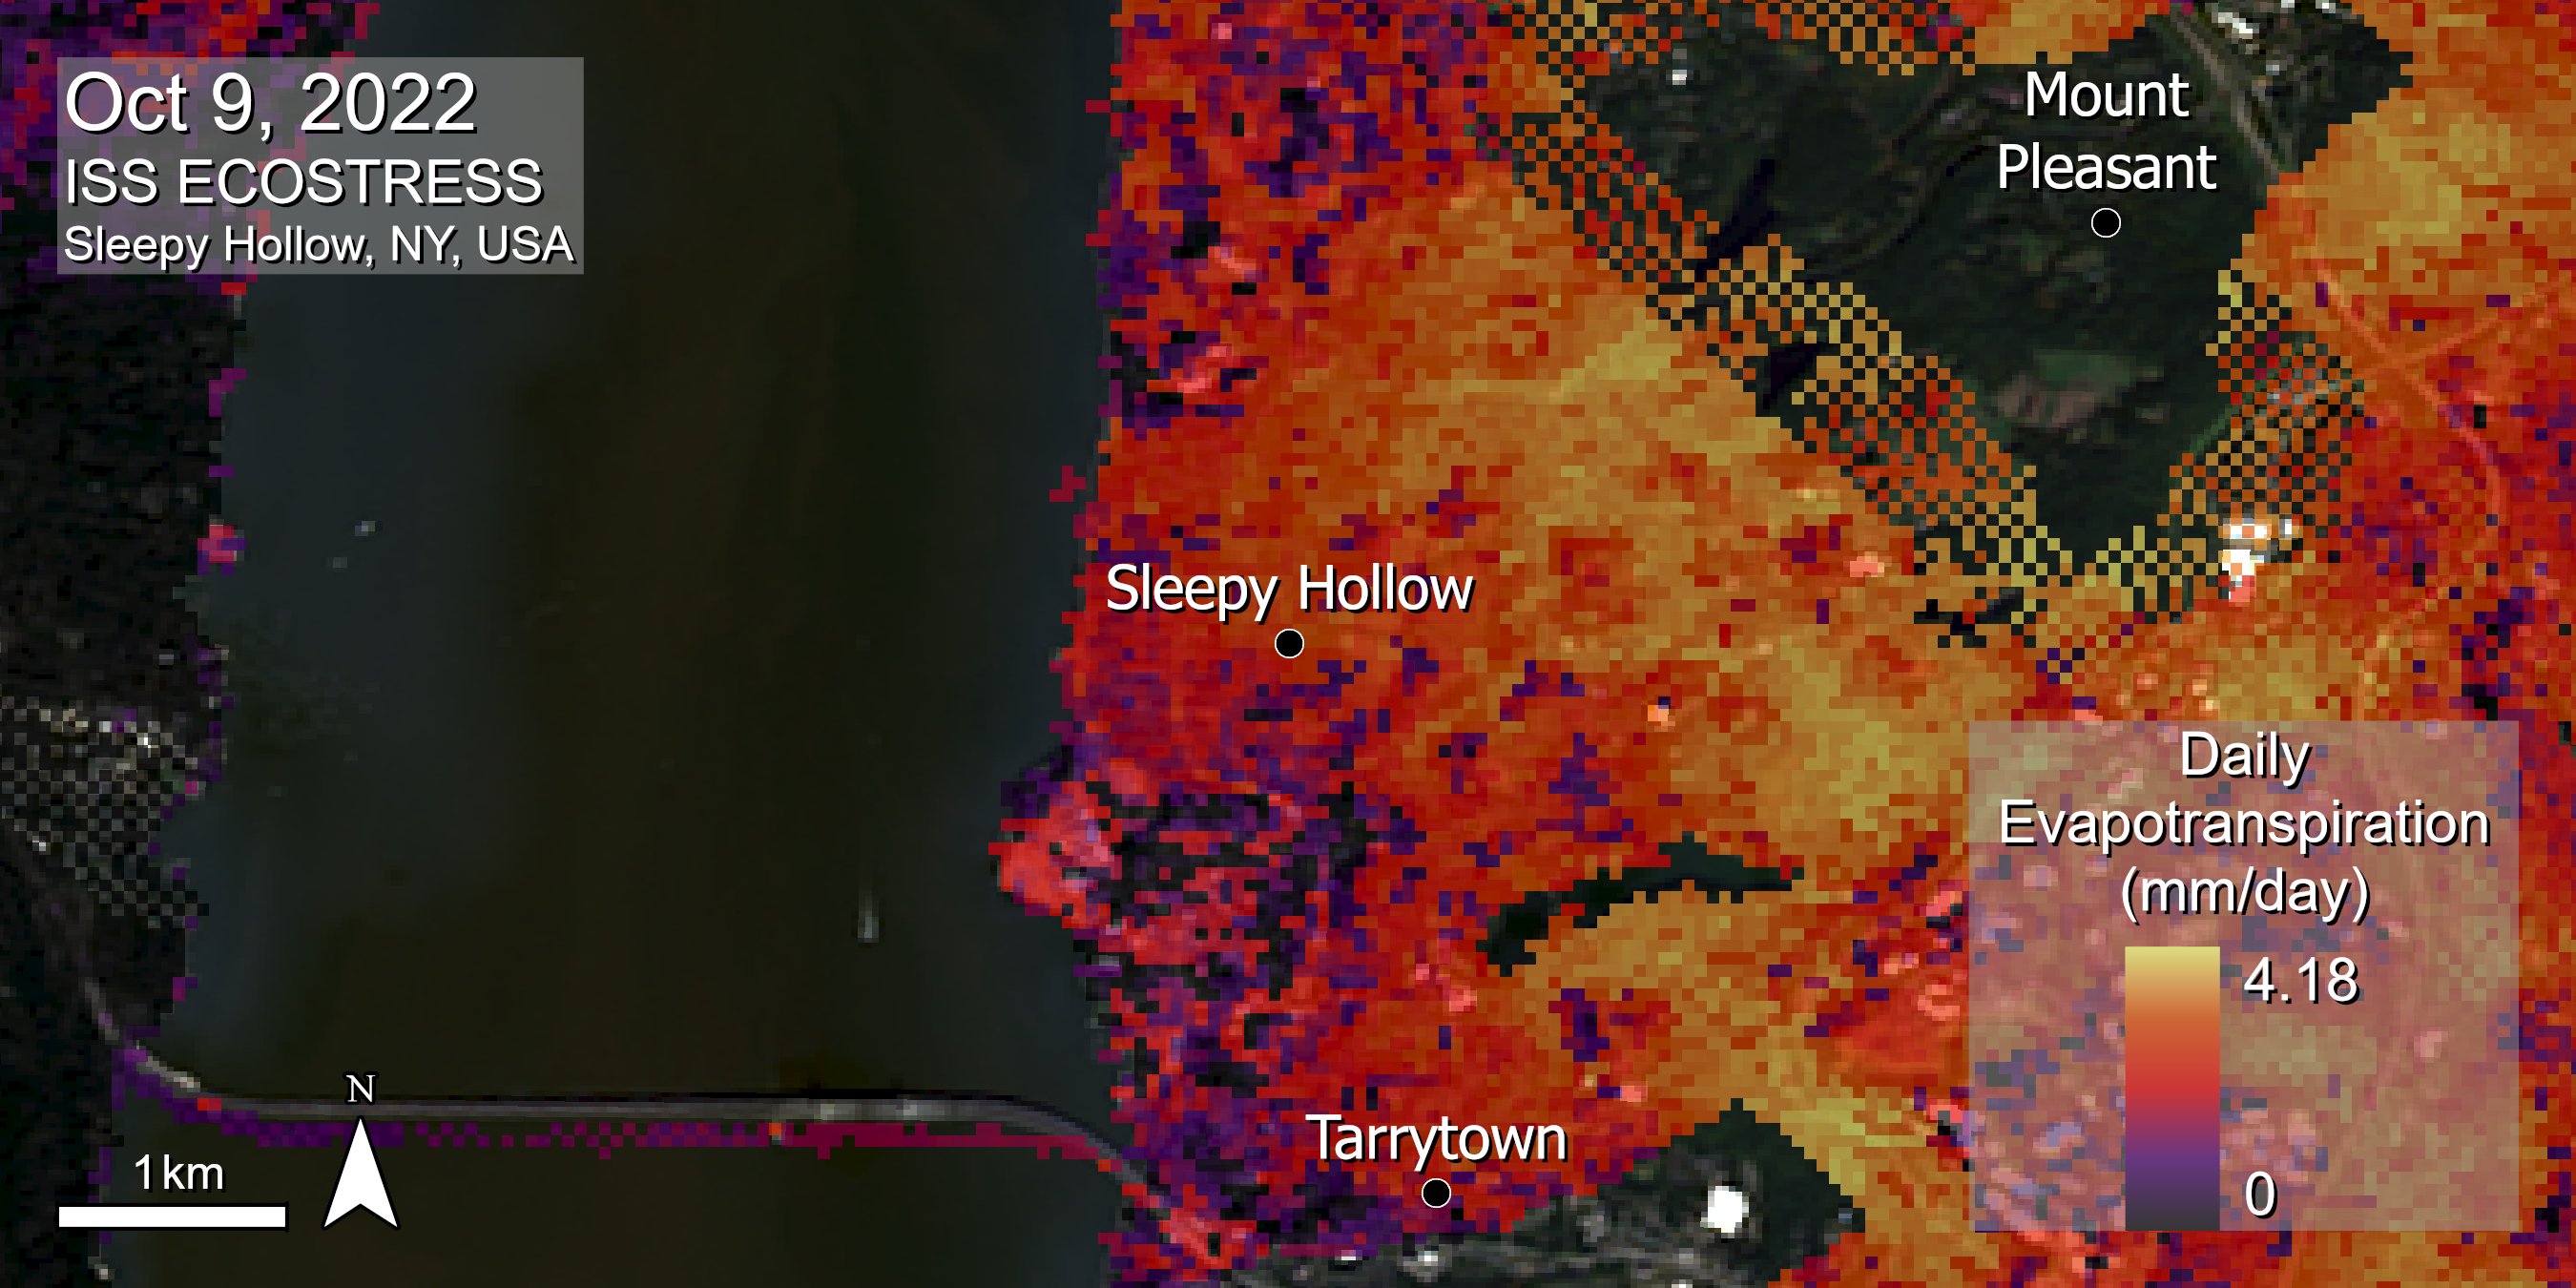 ECOSTRESS Daily Evapotranspiration data over Sleepy Hollow, NY on 09 Oct 2022